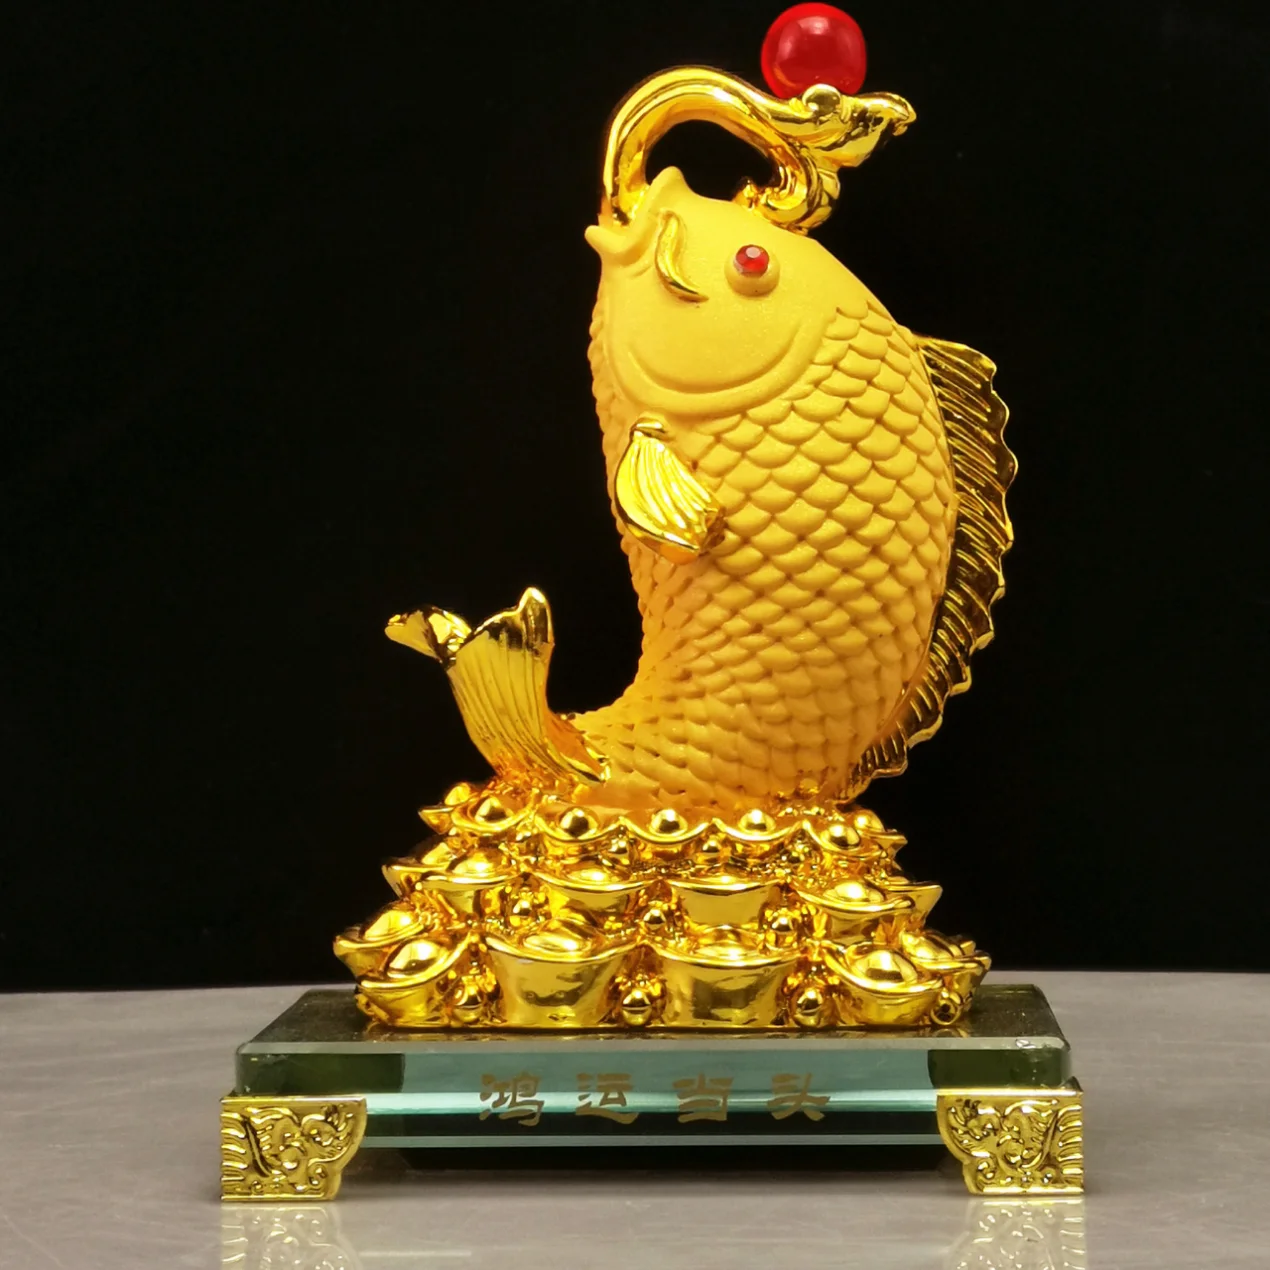 

Diwansi резиновые золотые приносящие удачу фигурки Arowana маленькие украшения имеют более одного года Декорации для гостиной, офисные подарки оптом.